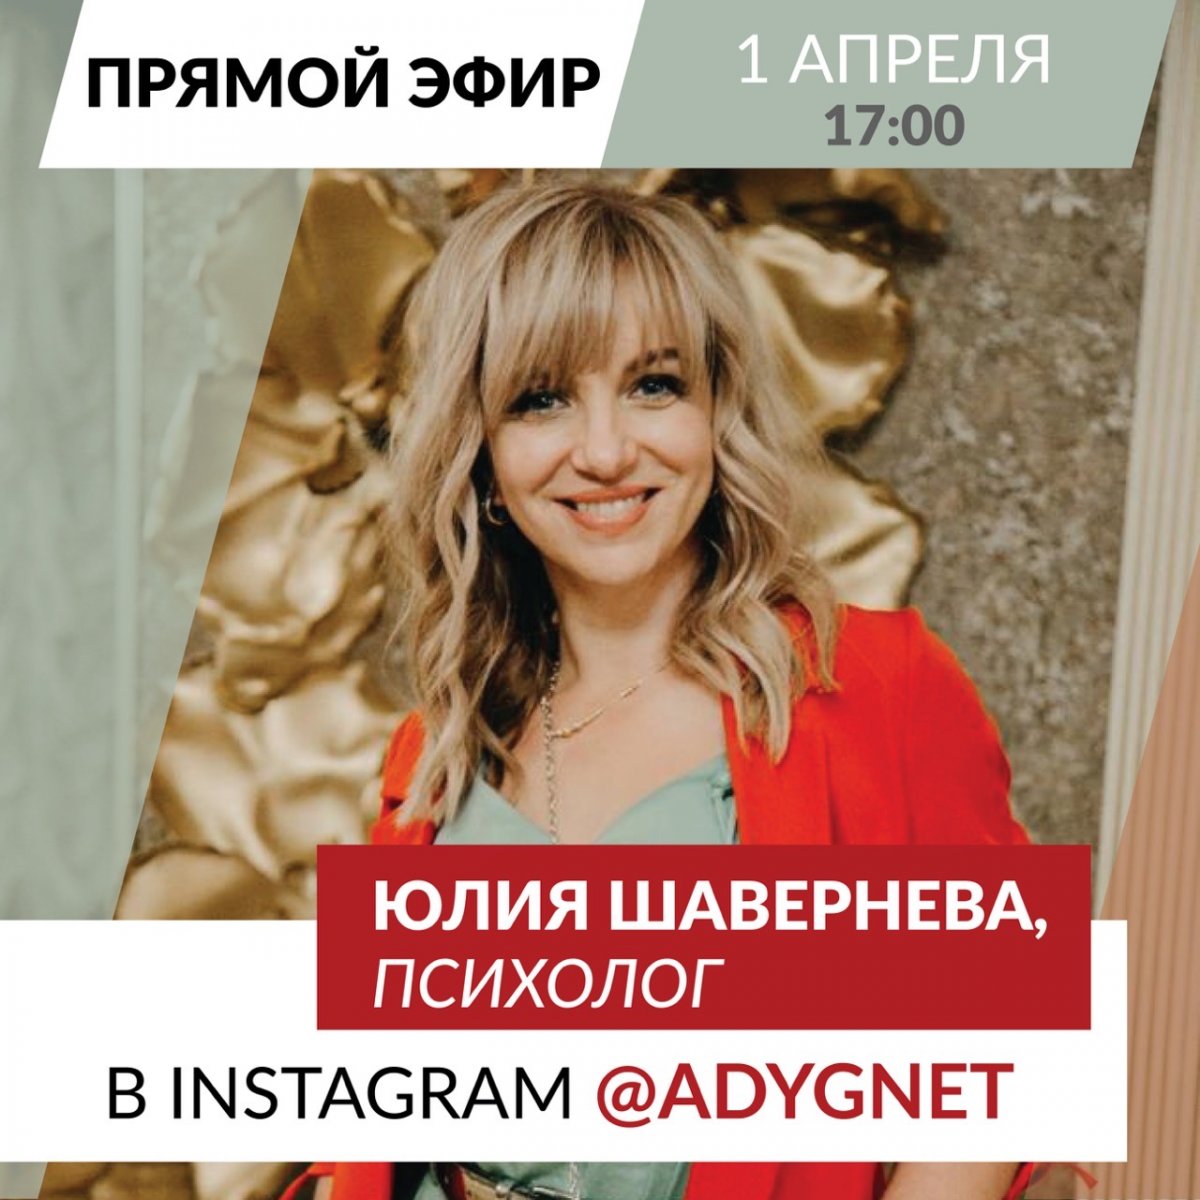 ⚡️⚡️В среду 1 апреля в Instagram-аккаунте Адыгейского государственного университета @adygnet в 17:00 (по МСК) состоится прямой эфир с практикующим психологом